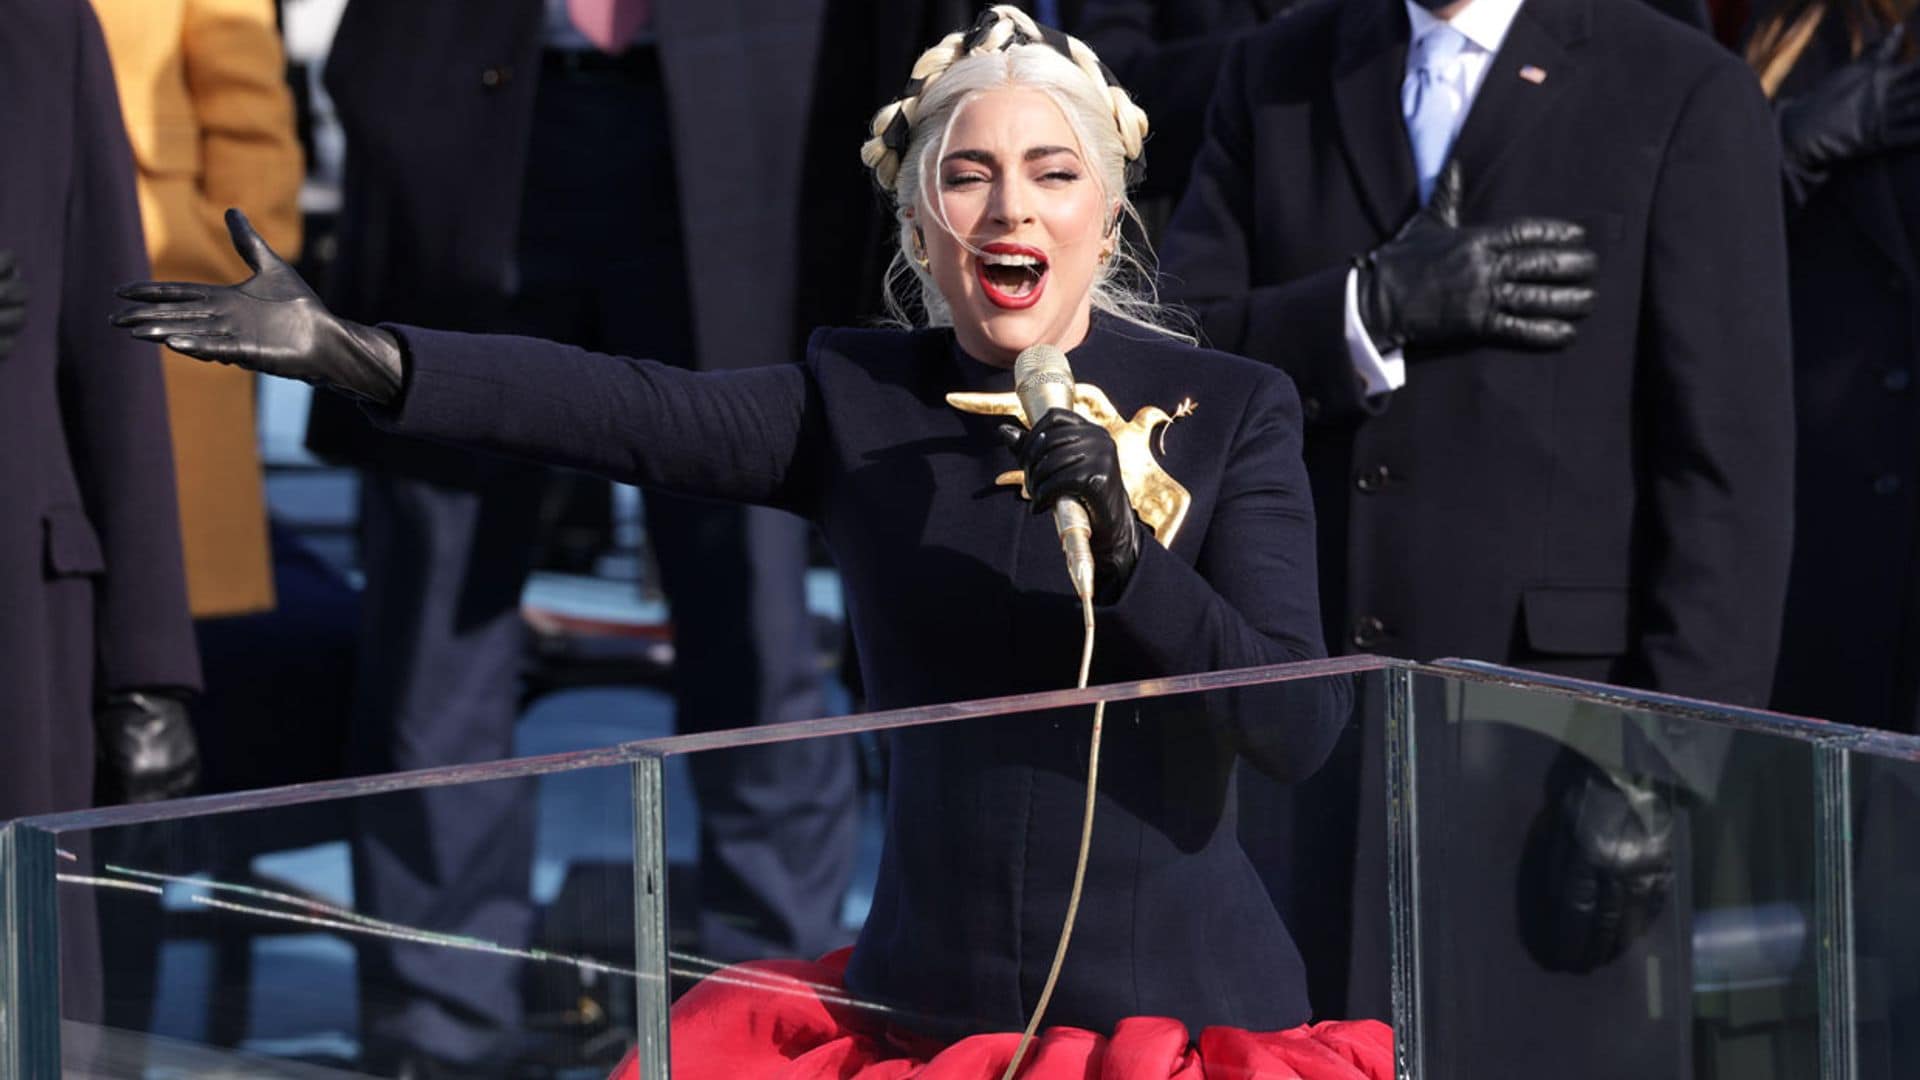 ¿Un 'look' antibalas? El secreto que escondía el vestido de Lady Gaga en la investidura de Joe Biden